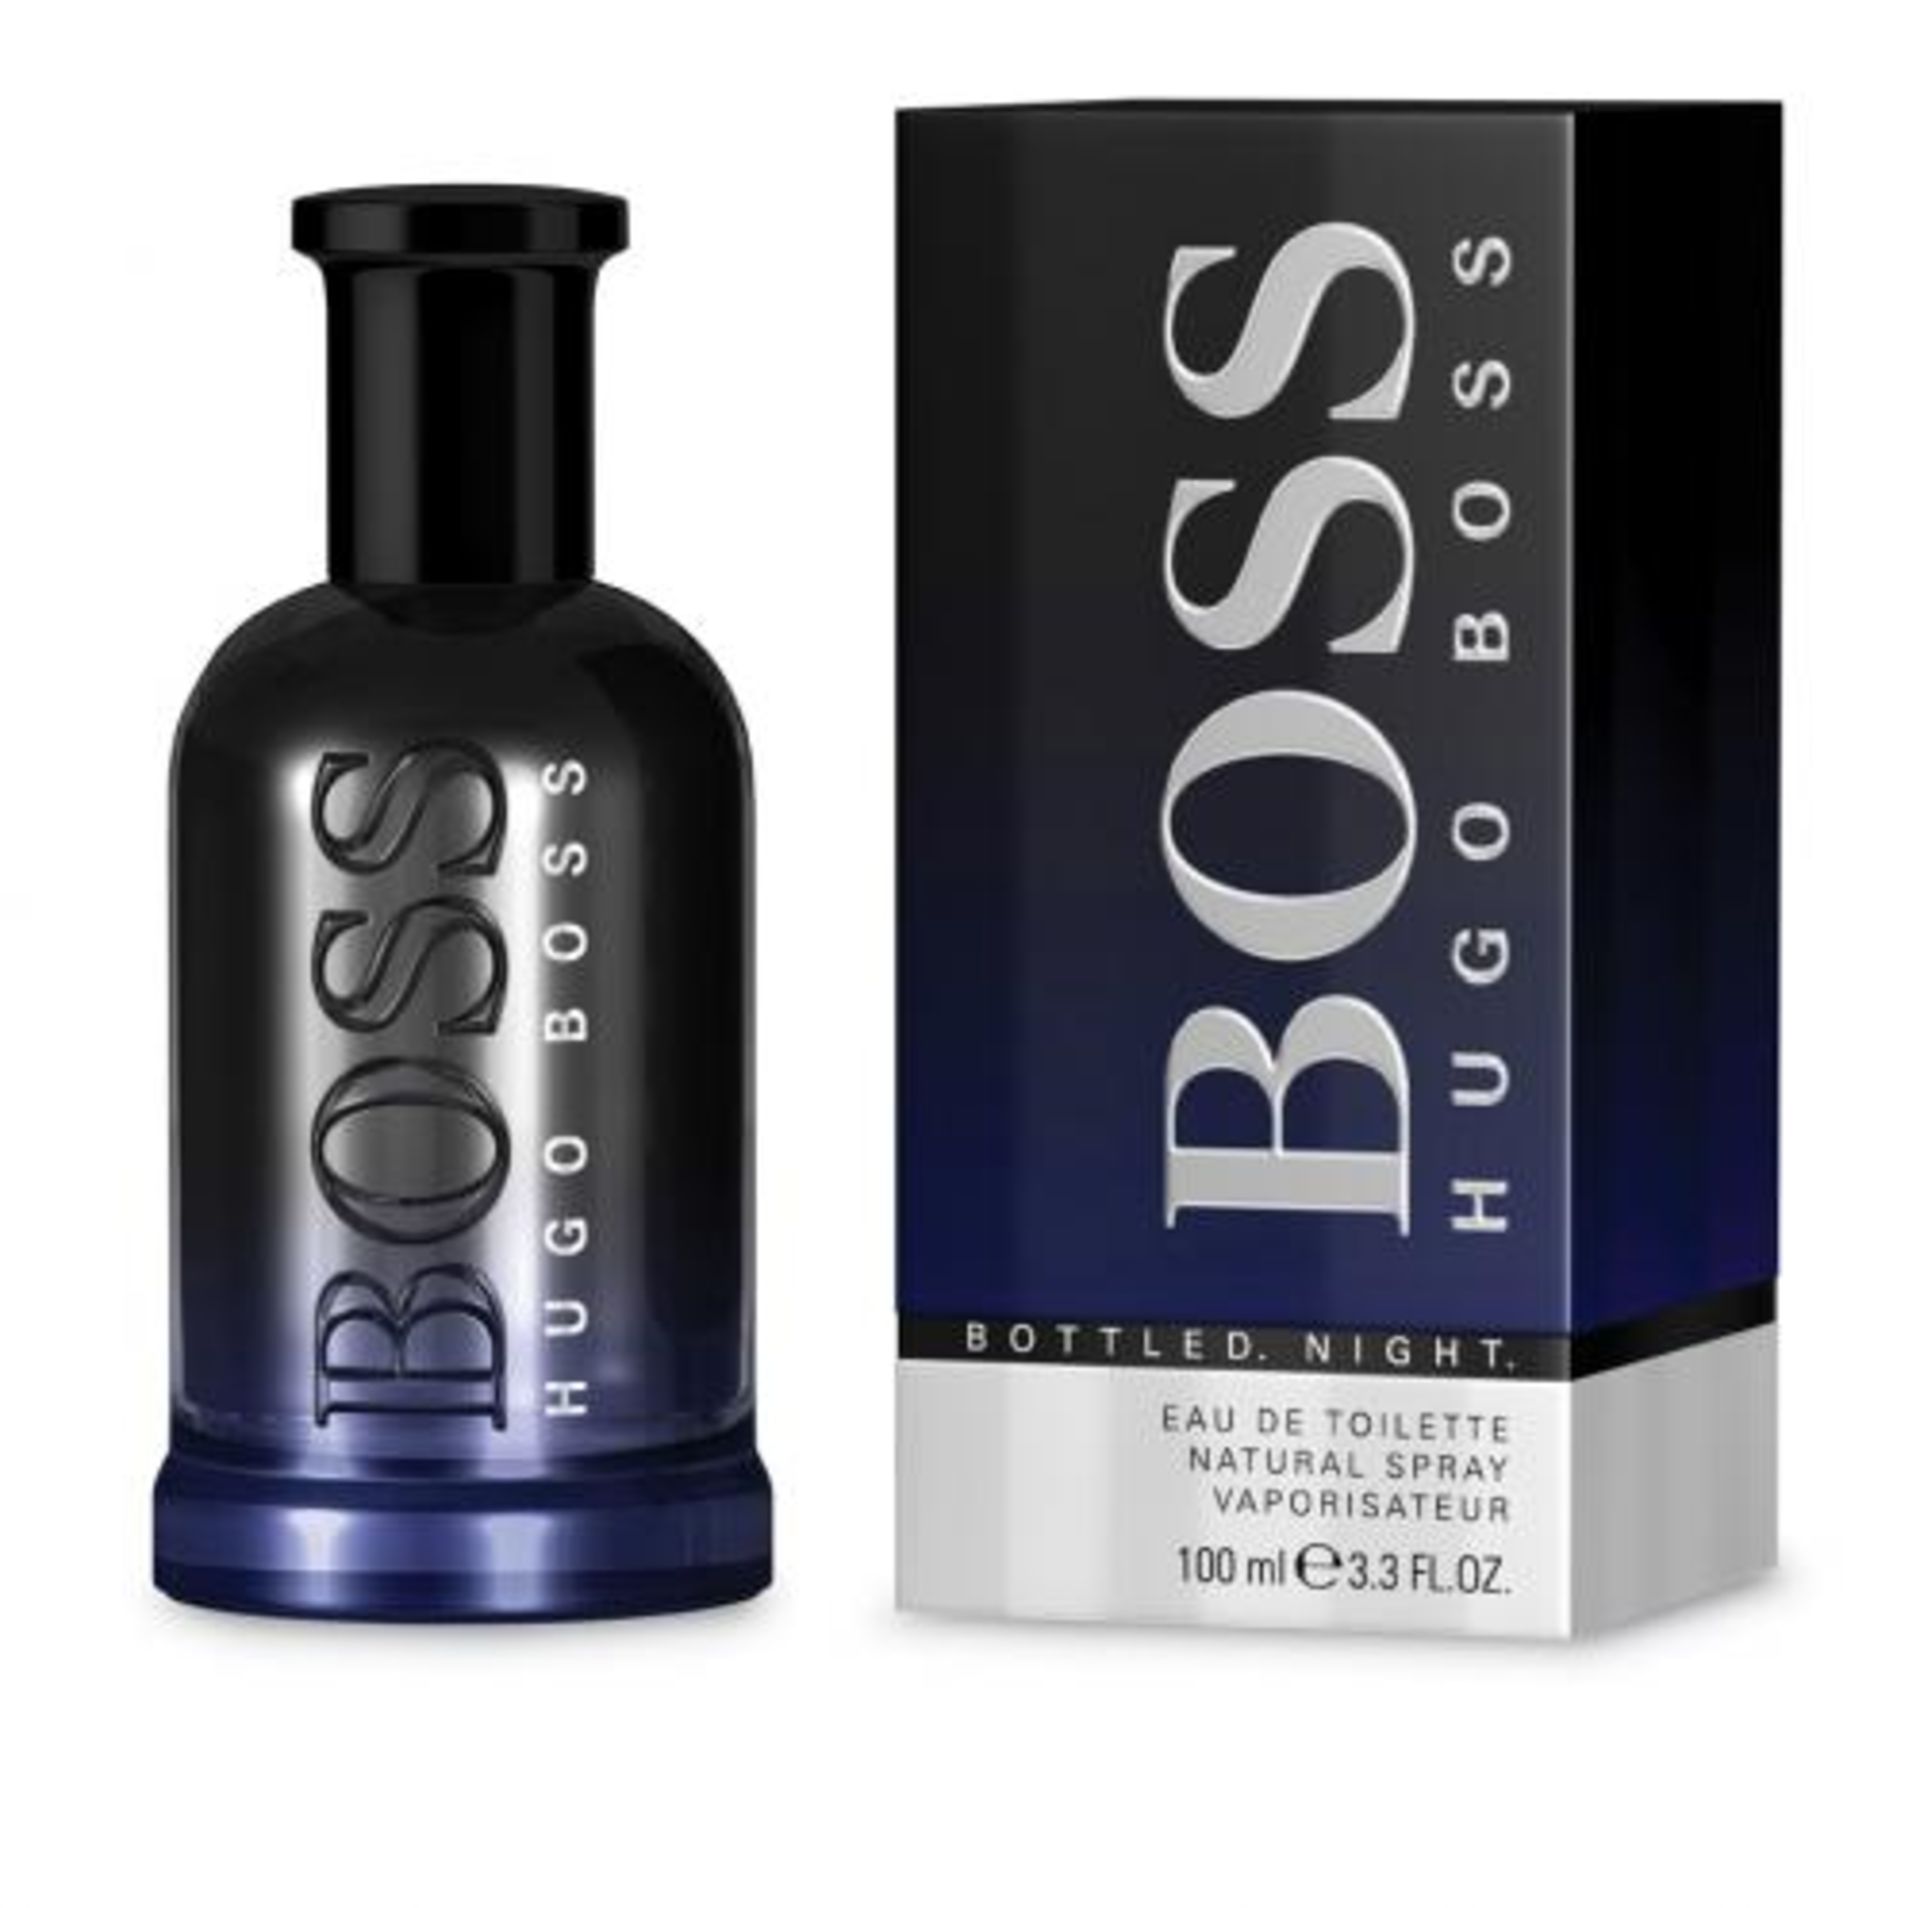 V Brand New Hugo Boss Bottled Night 100ml EDT Spray